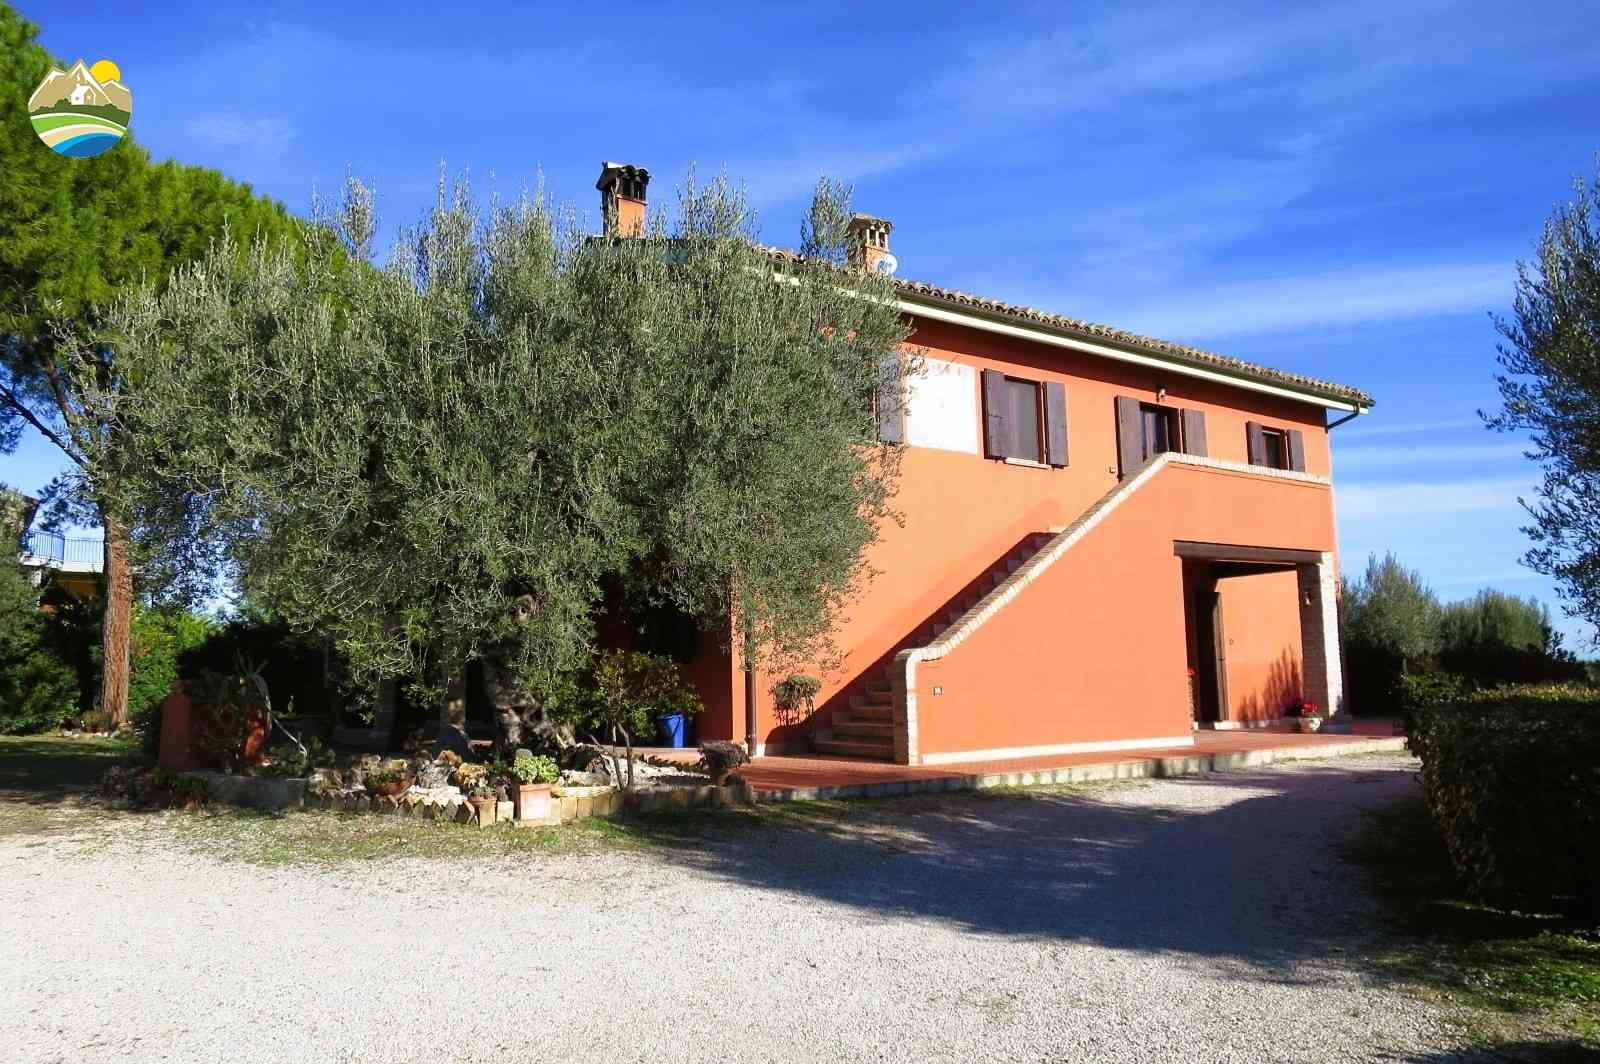 Country Houses Country Houses for sale Bellante (TE), Casale La Vignola - Bellante - EUR 524.401 610